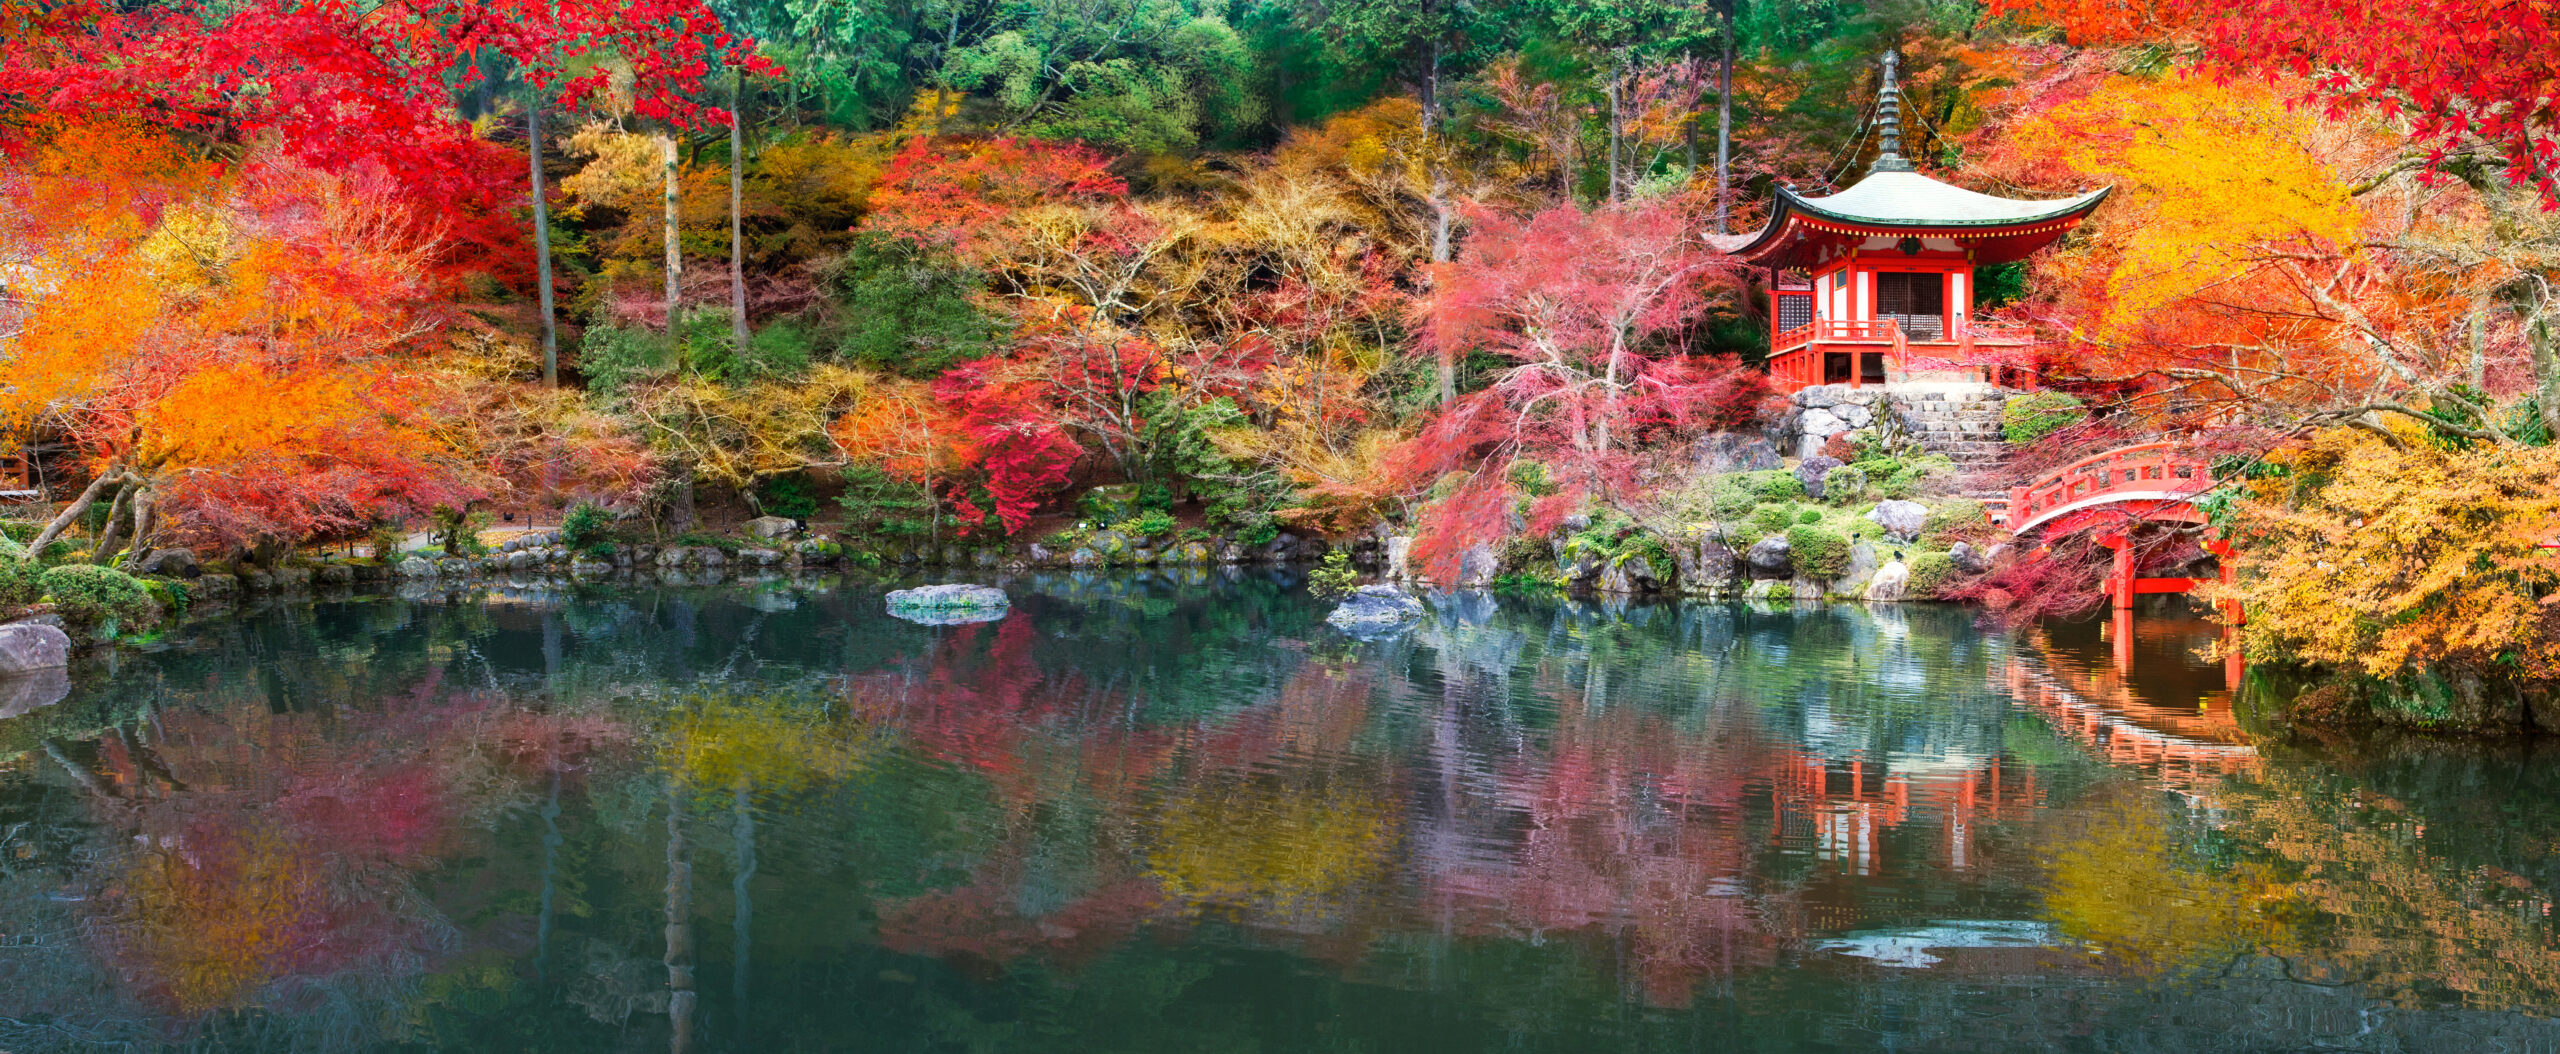 Die Gestaltung japanischer Gärten ist auf ästhetischen Genuss ausgerichtet und sie sind so angelegt, dass sie sich je nach Jahreszeit verschieden inszenieren.